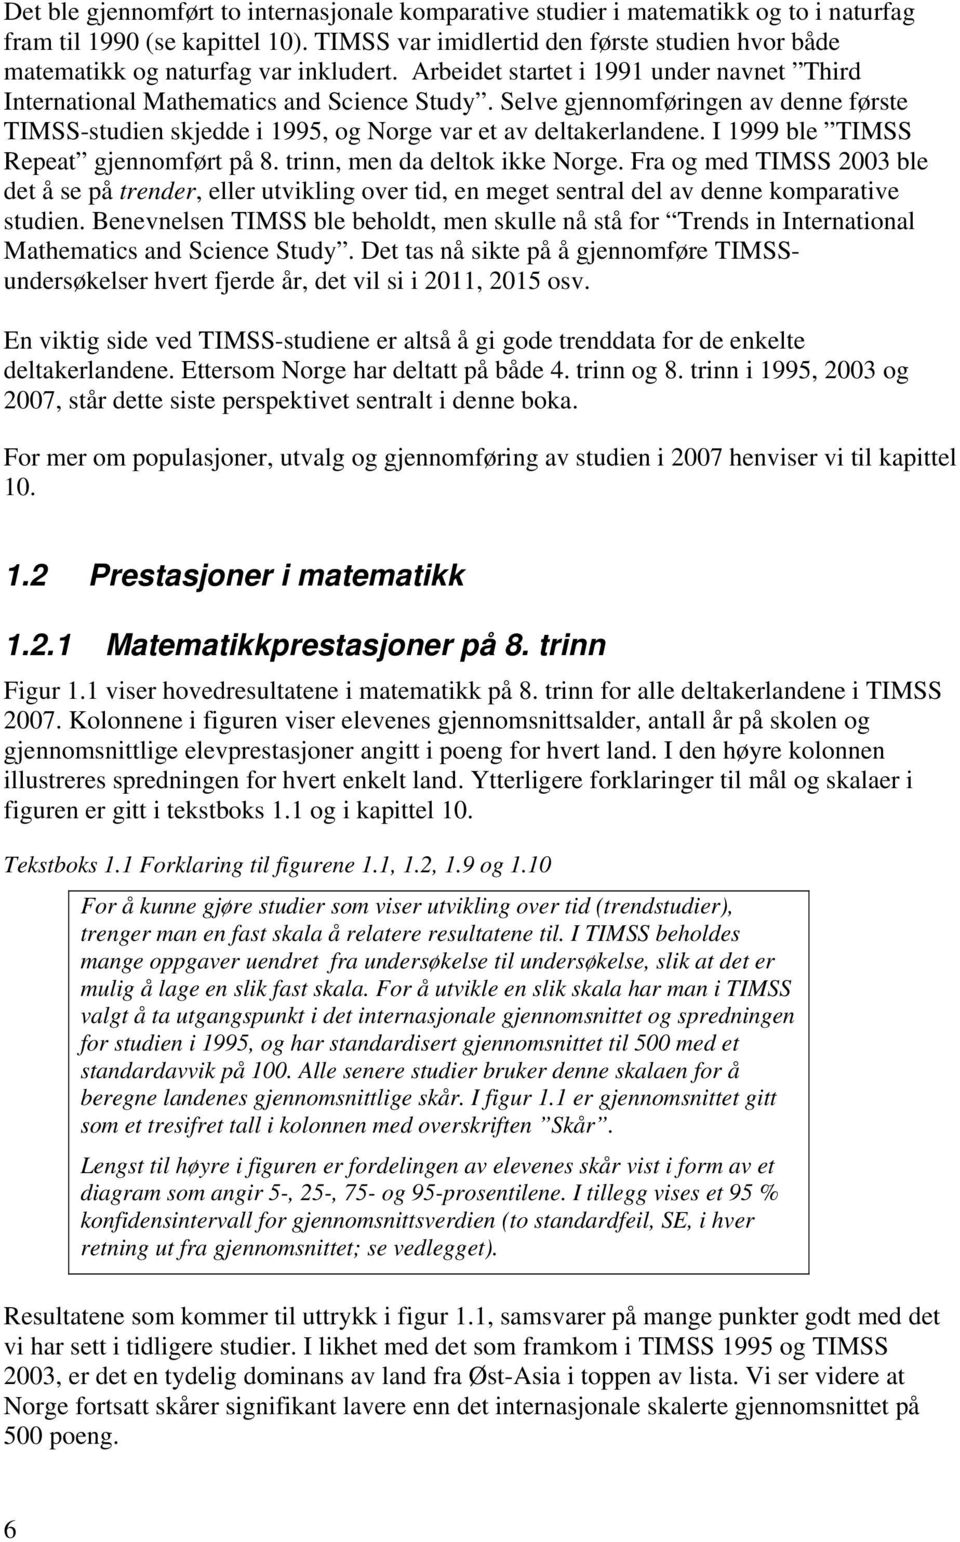 Selve gjennomføringen av denne første TIMSS-studien skjedde i 1995, og Norge var et av deltakerlandene. I 1999 ble TIMSS Repeat gjennomført på 8. trinn, men da deltok ikke Norge.